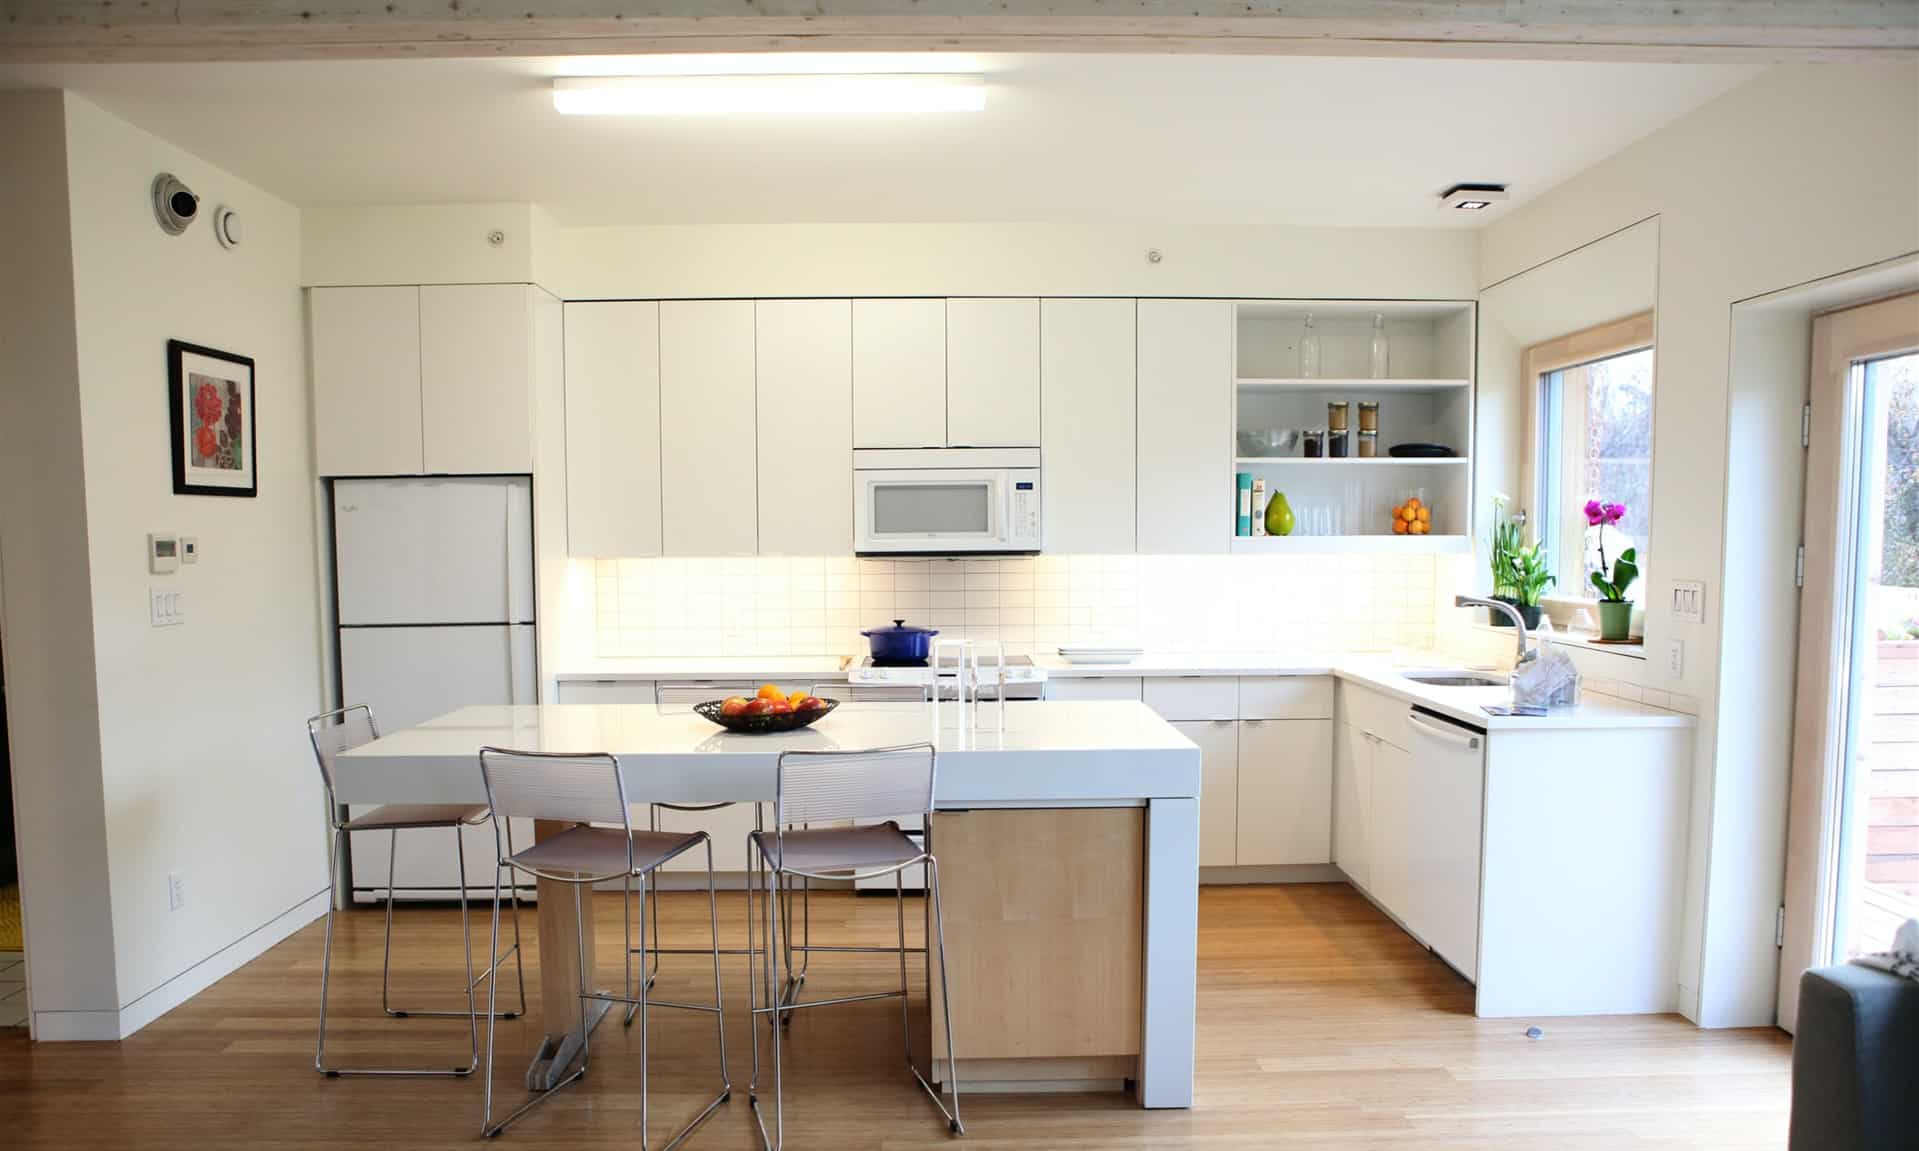 6 types of kitchen layouts, peninsula kitchen layout